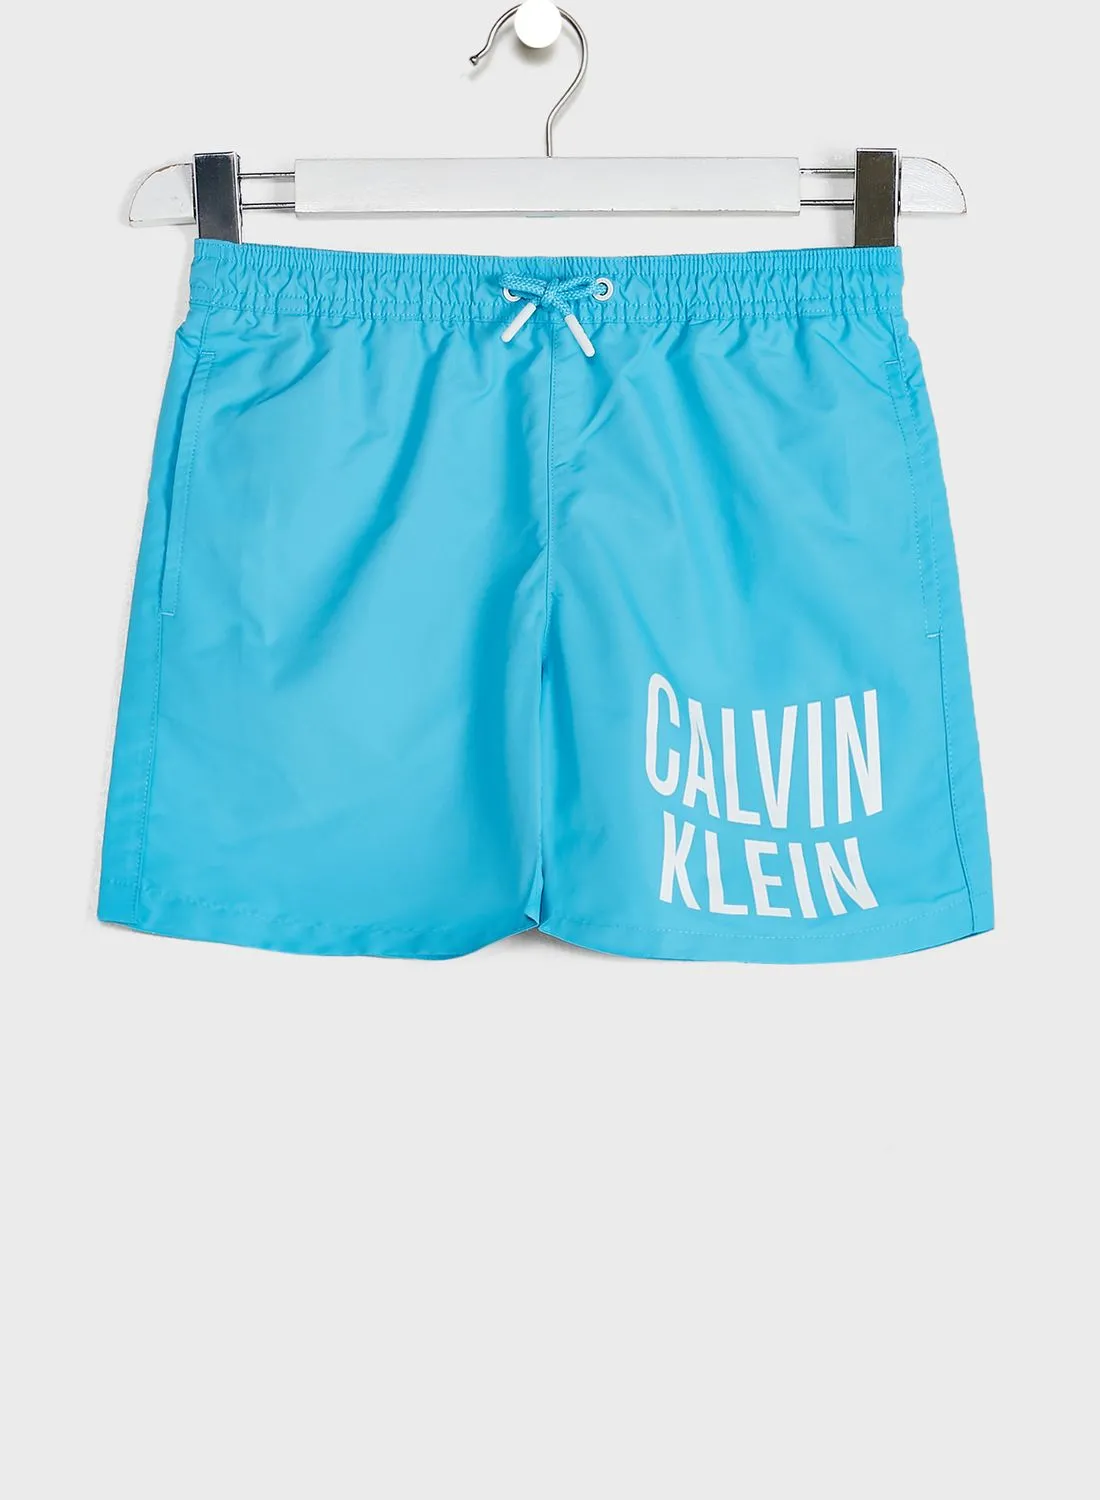 CALVIN KLEIN Kids Logo Drawstring Shorts